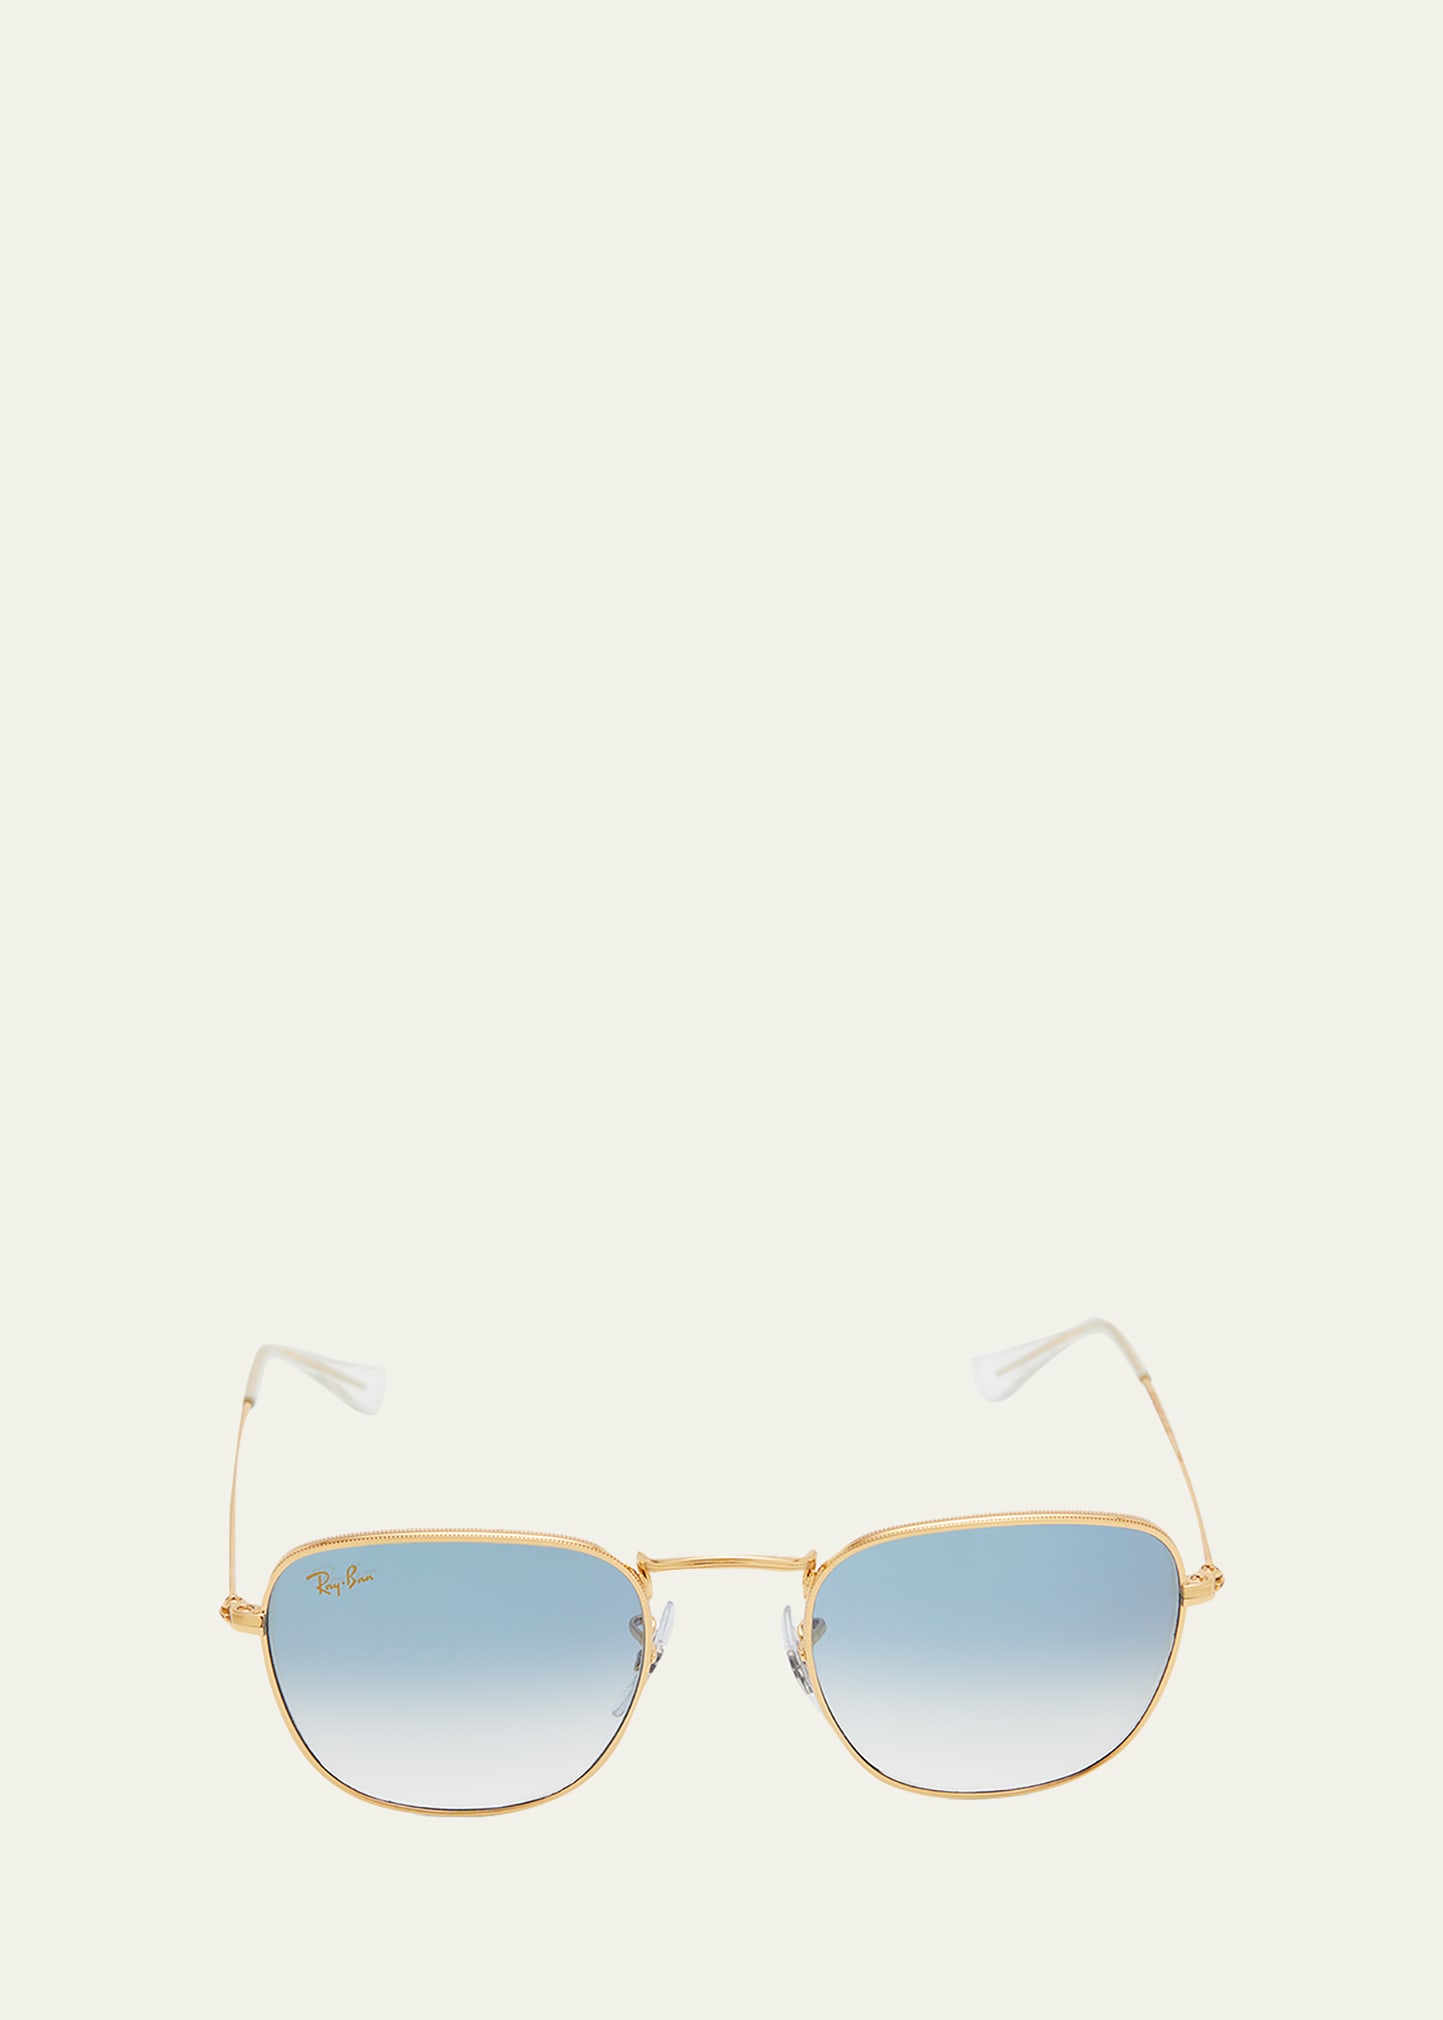 Square Textured Metal Sunglasses